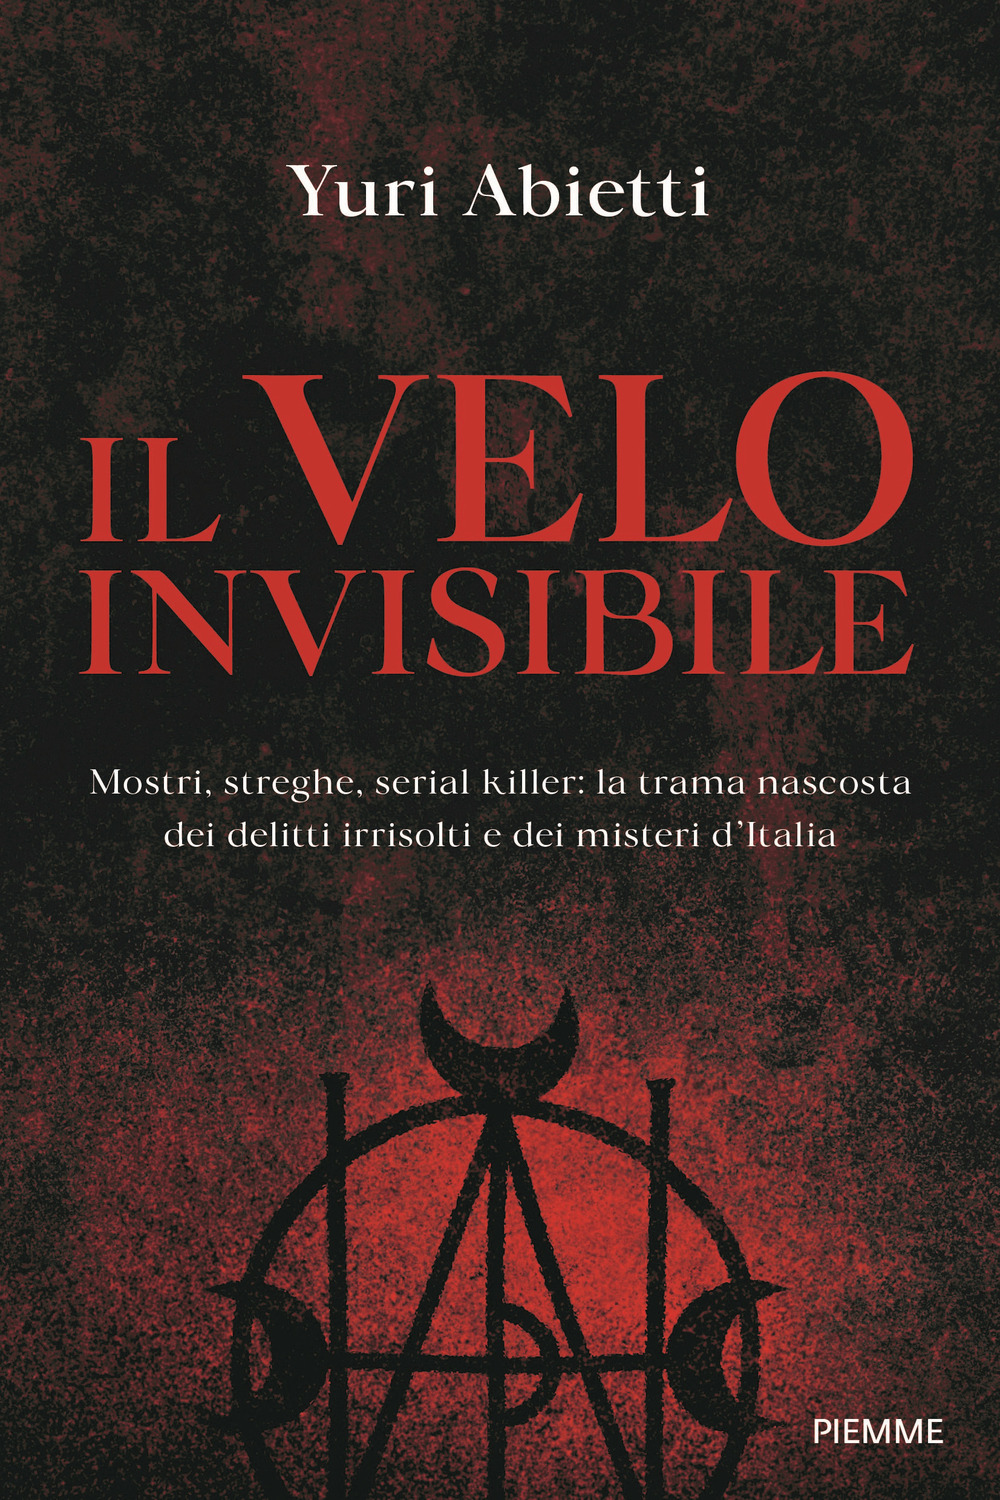 Il velo invisibile. Mostri, streghe, serial killer: la trama nascosta dei delitti irrisolti e dei misteri d'Italia - Yuri Abietti - Piemme